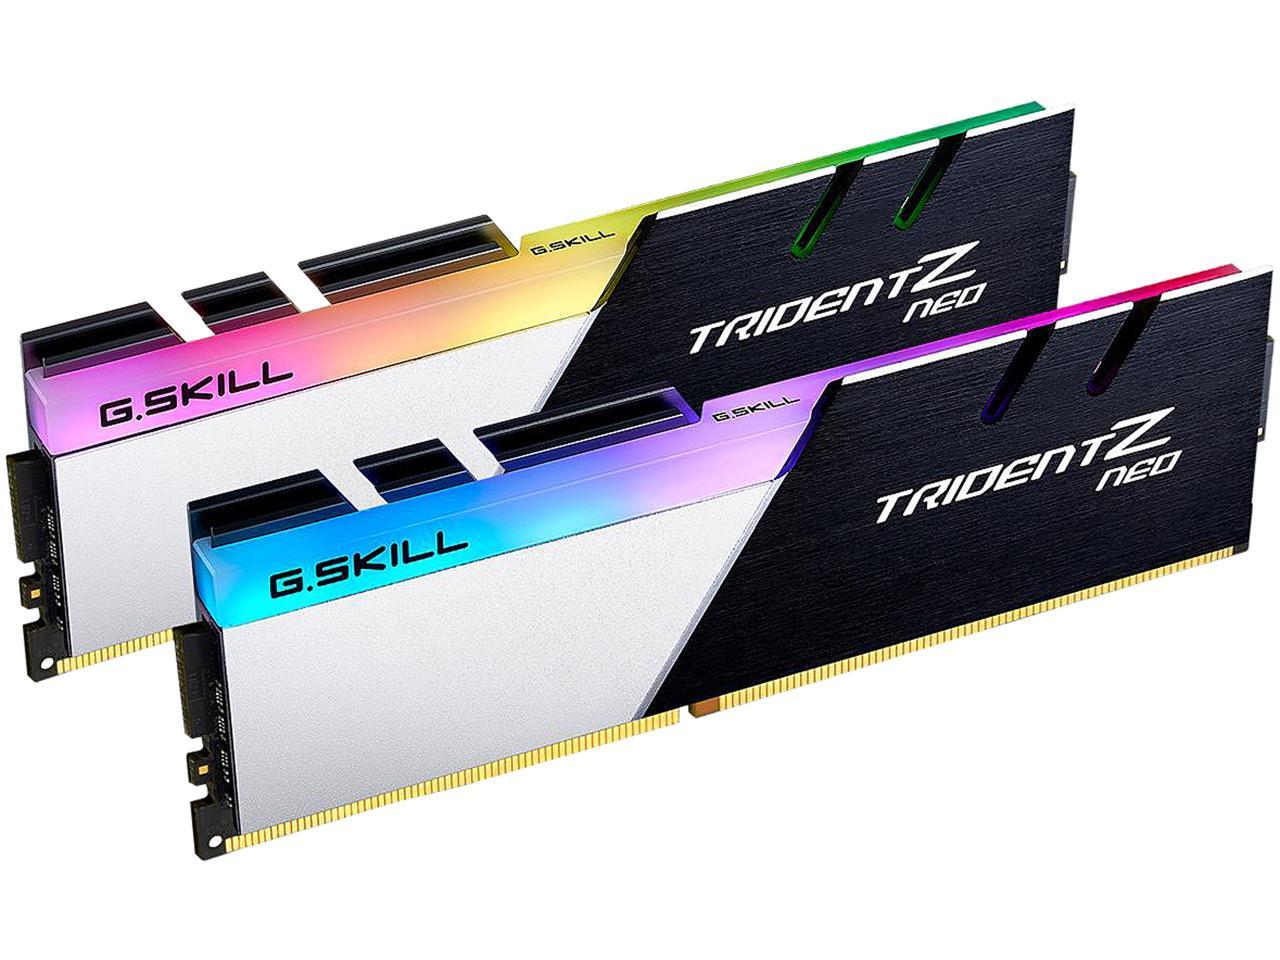 G Skill Trident Z Neo RGB DDR4 3600MHz 32GB (2x16GB)CL18 (F4-3600C18D-32GTZN)